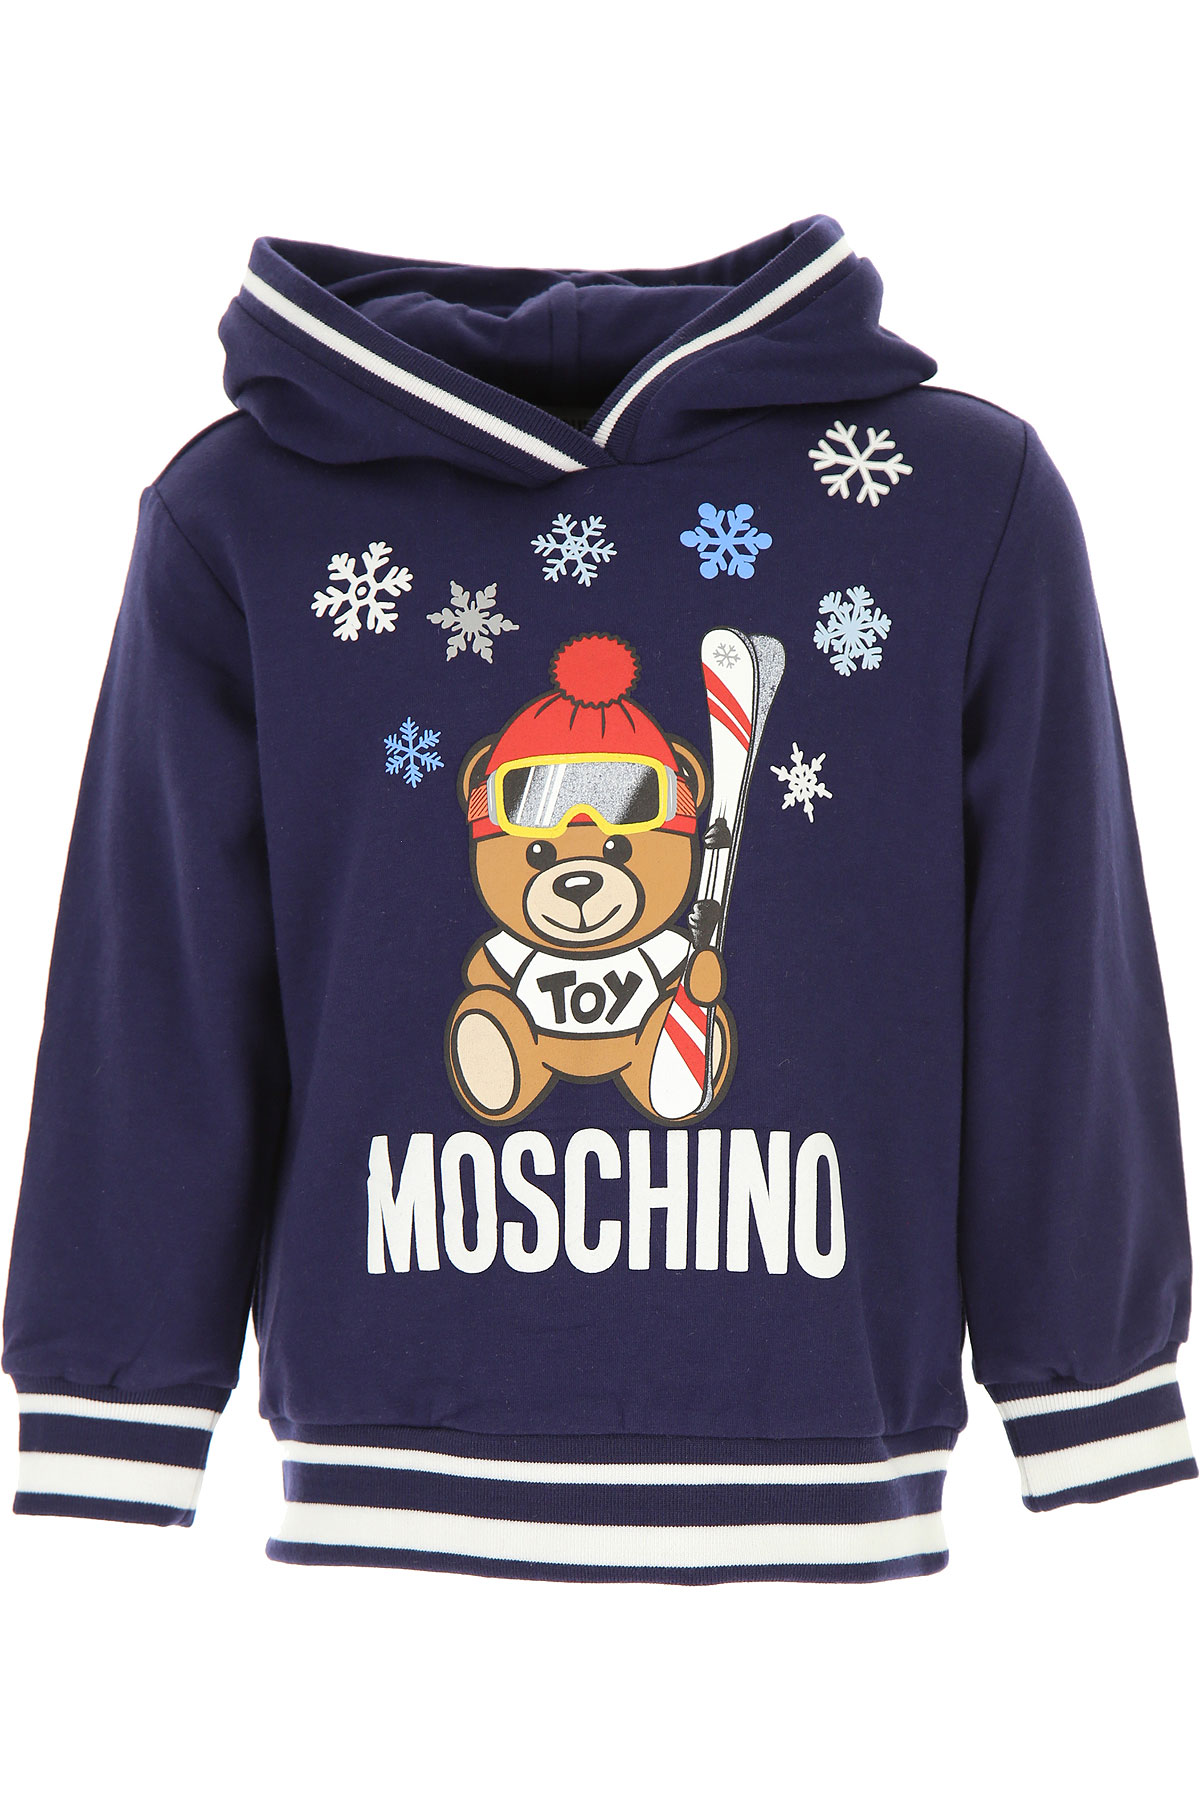 Moschino Kinder Sweatshirt & Kapuzenpullover für Jungen Günstig im Sale, Blau, Baumwolle, 2017, 10Y 14Y 4Y 5Y